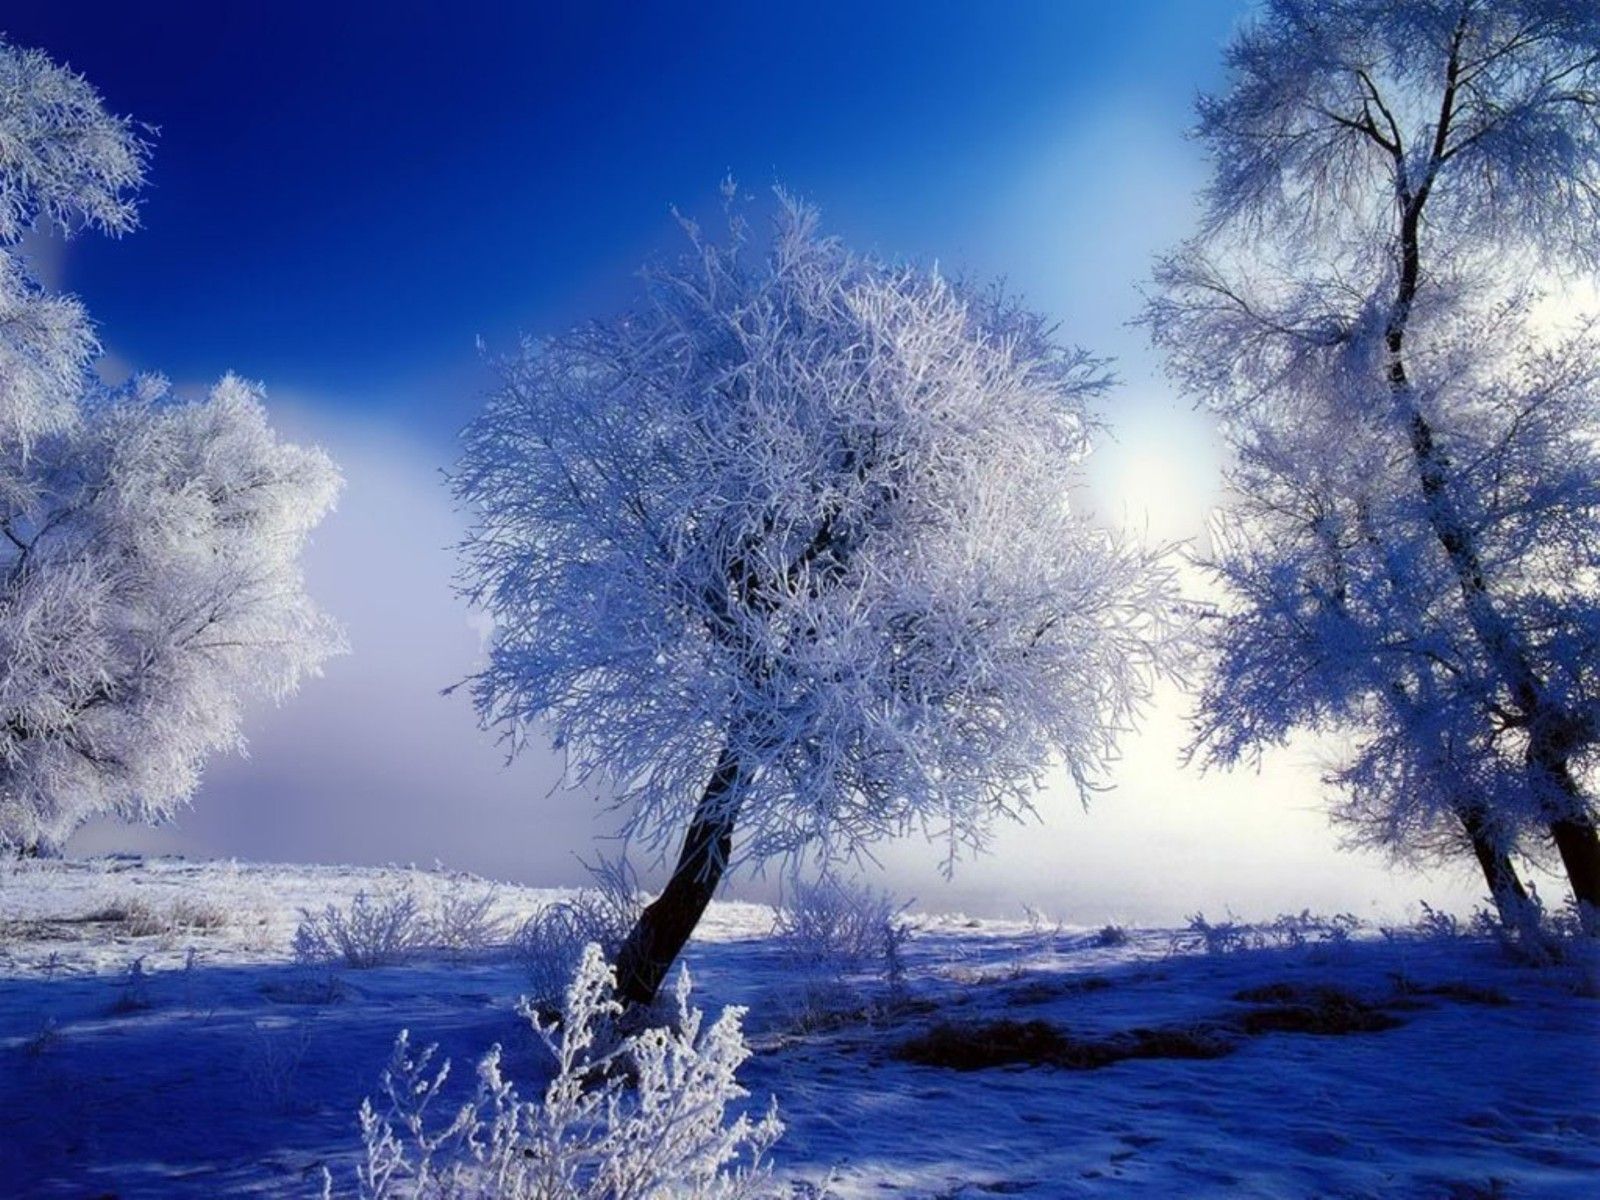 Wallpaper: Winter Beauty